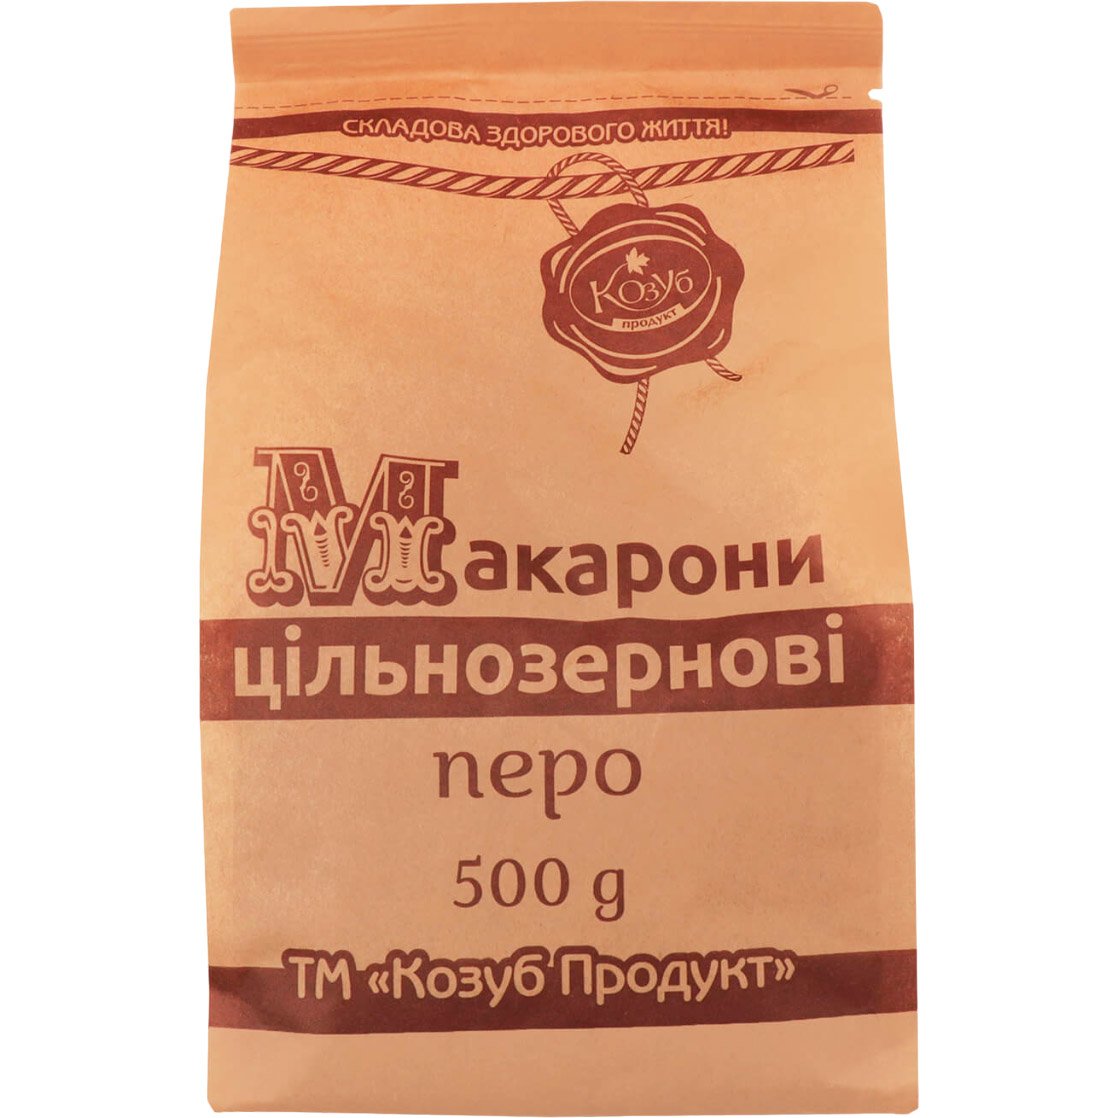 Макаронные изделия Козуб продукт Перо, цельнозерновые, 500 г (813553) - фото 1